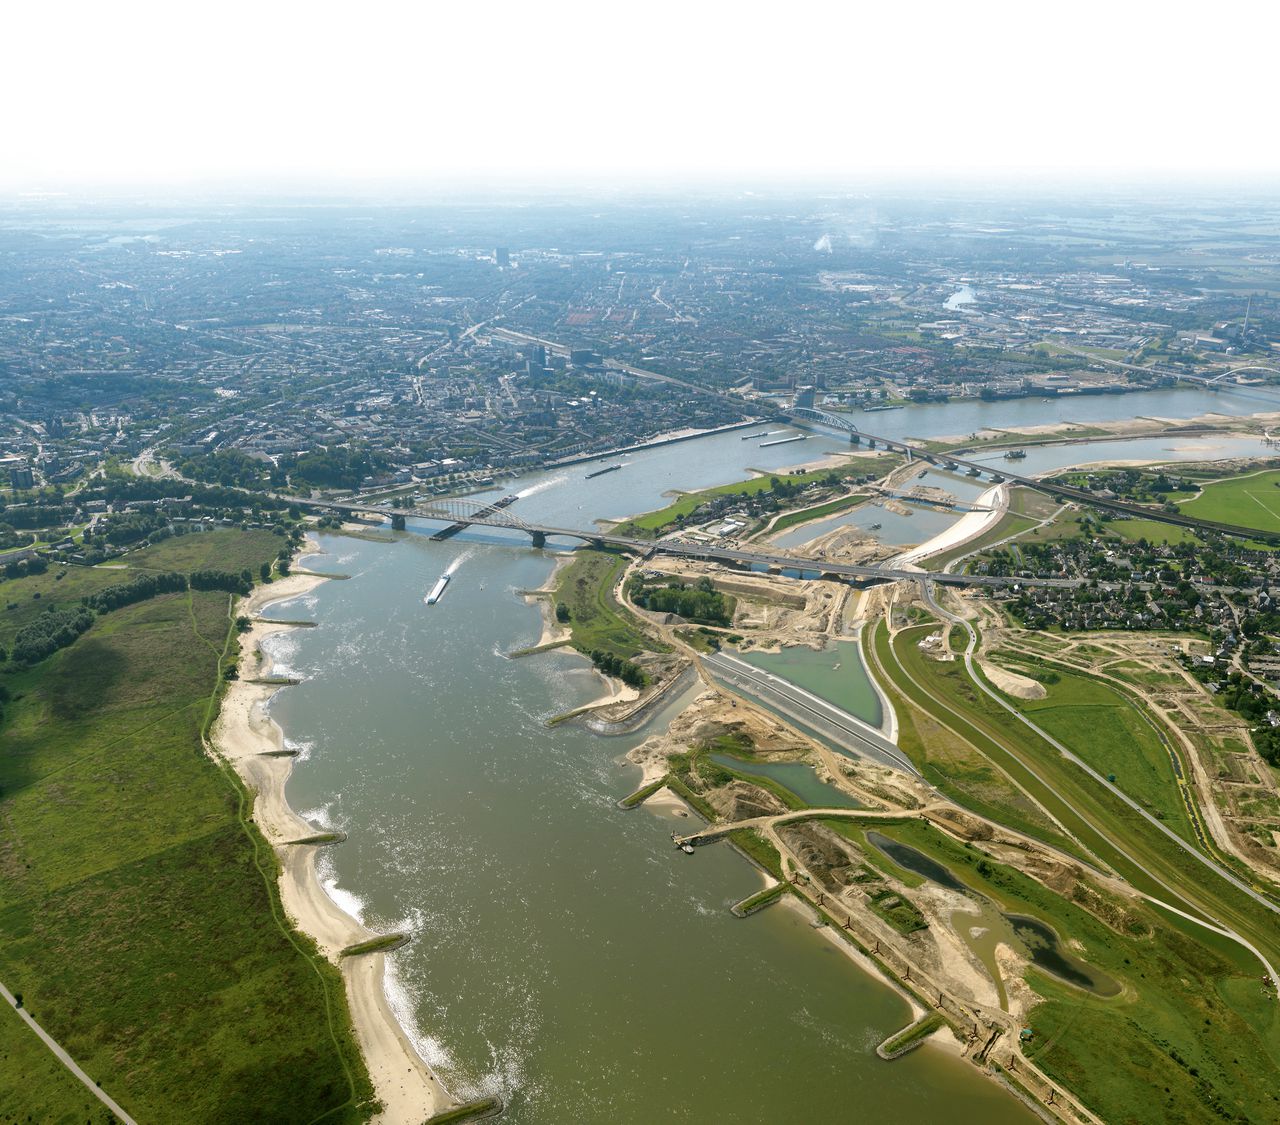 Verbreding van de Waal tussen Lent en Nijmegen in het kader van het project Ruimte voor de rivier.